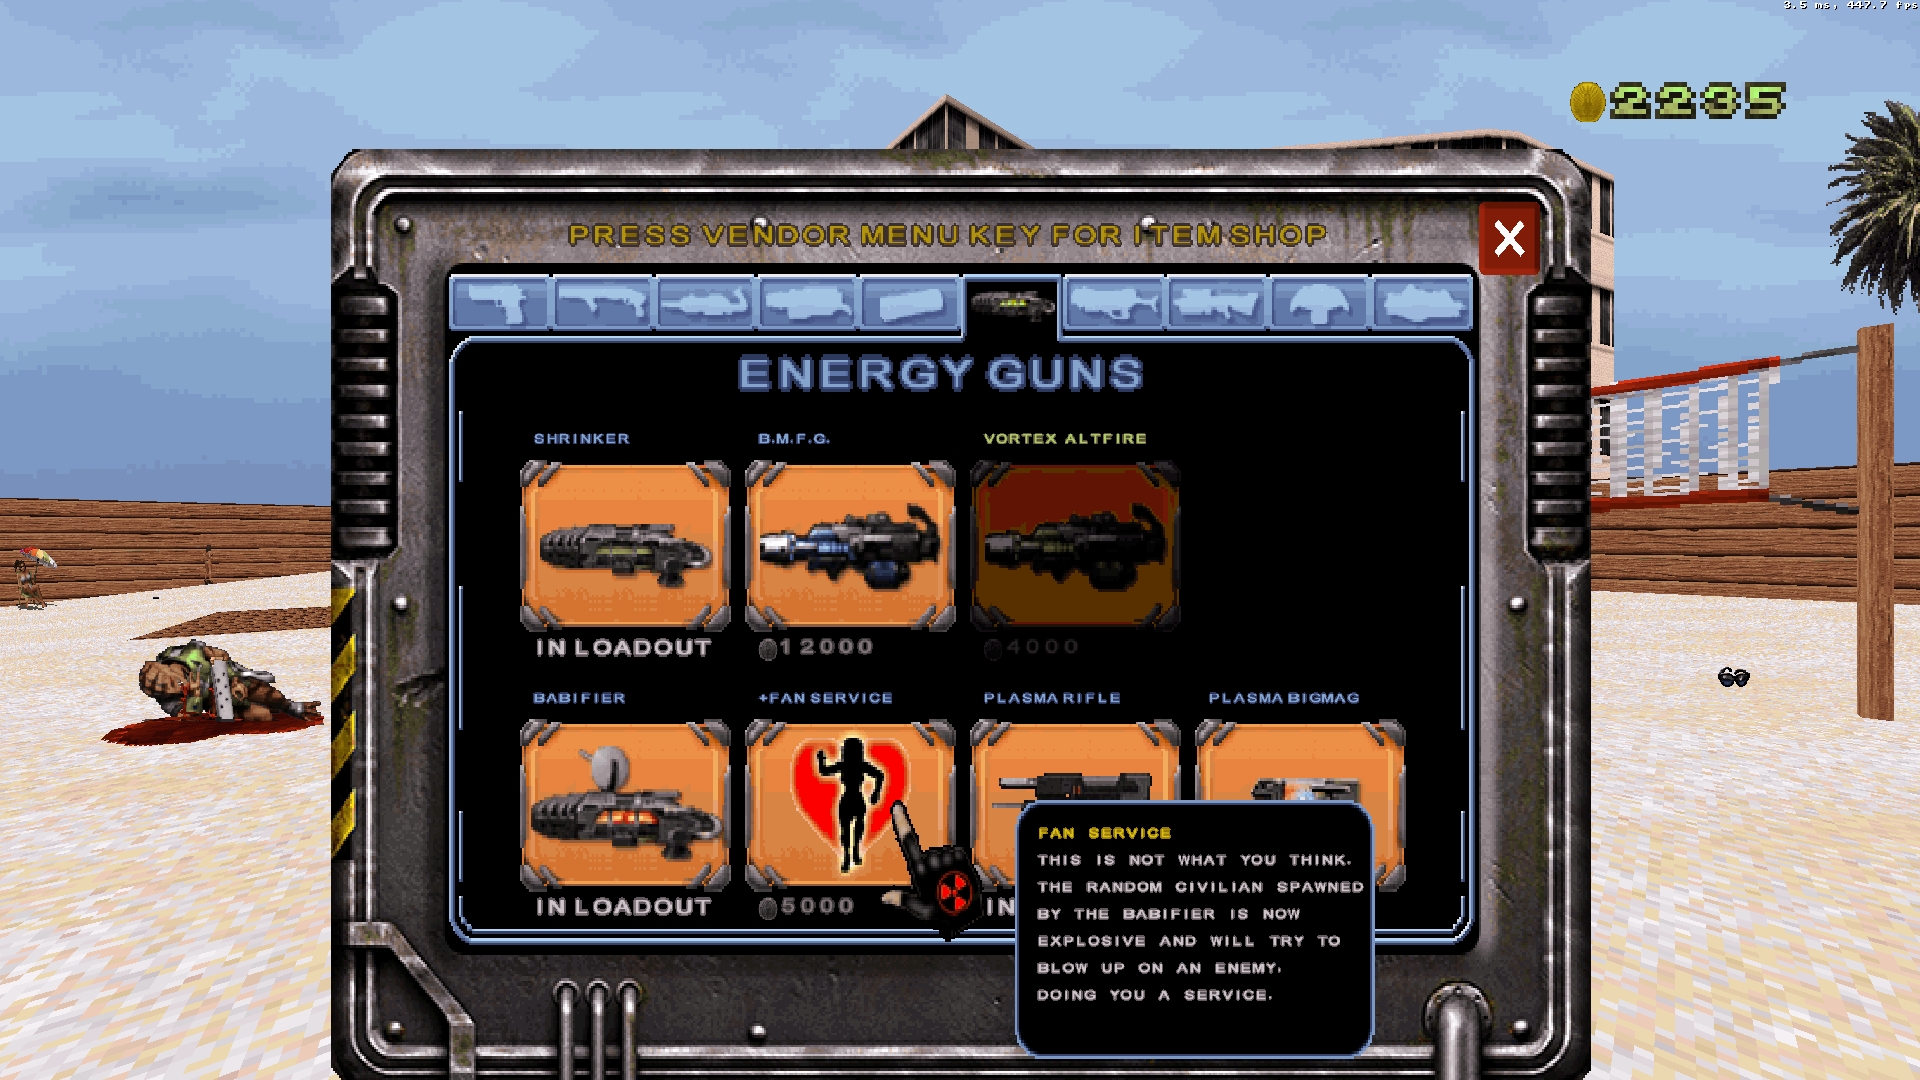 Alien Armageddon's weapon shop screen